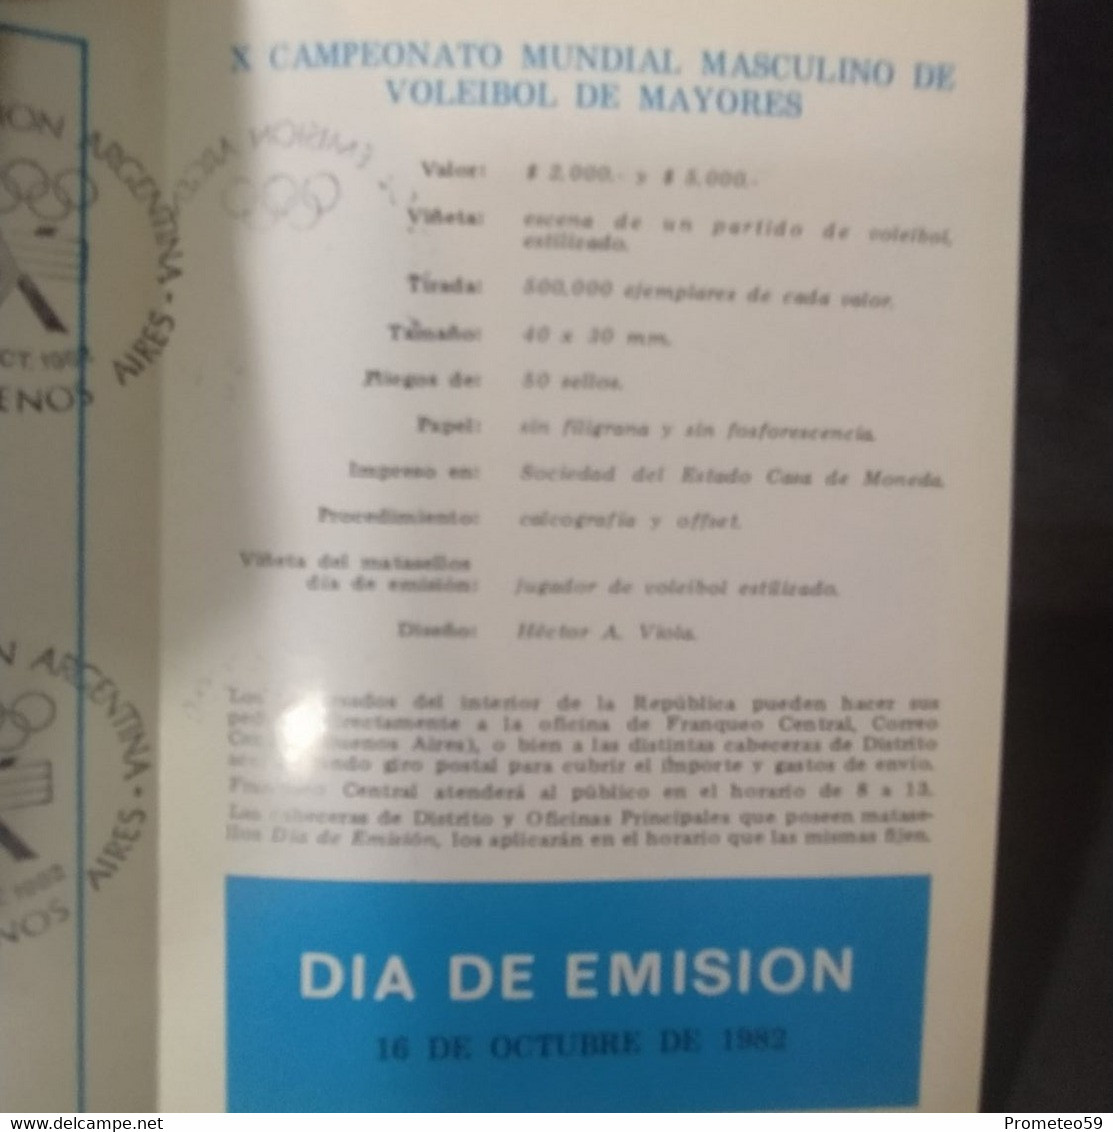 Volante Día De Emisión – 16/10/1982 – II Juegos Cruz Del Sur – Origen: Argentina - Markenheftchen